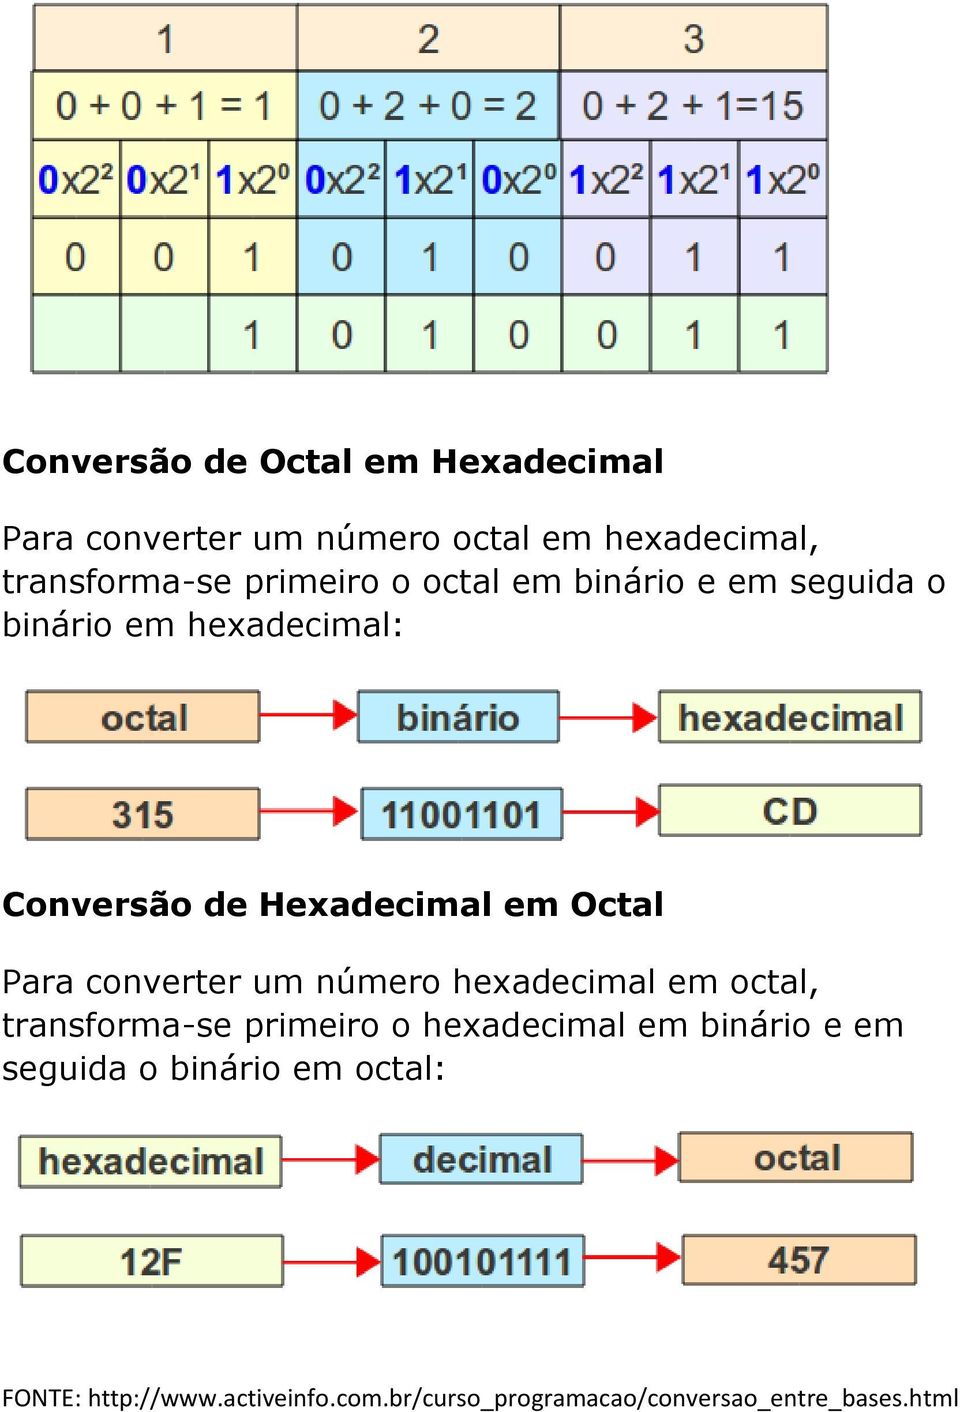 Para converter um número hexadecimal em octal, transforma-se primeiro o hexadecimal em binário e em